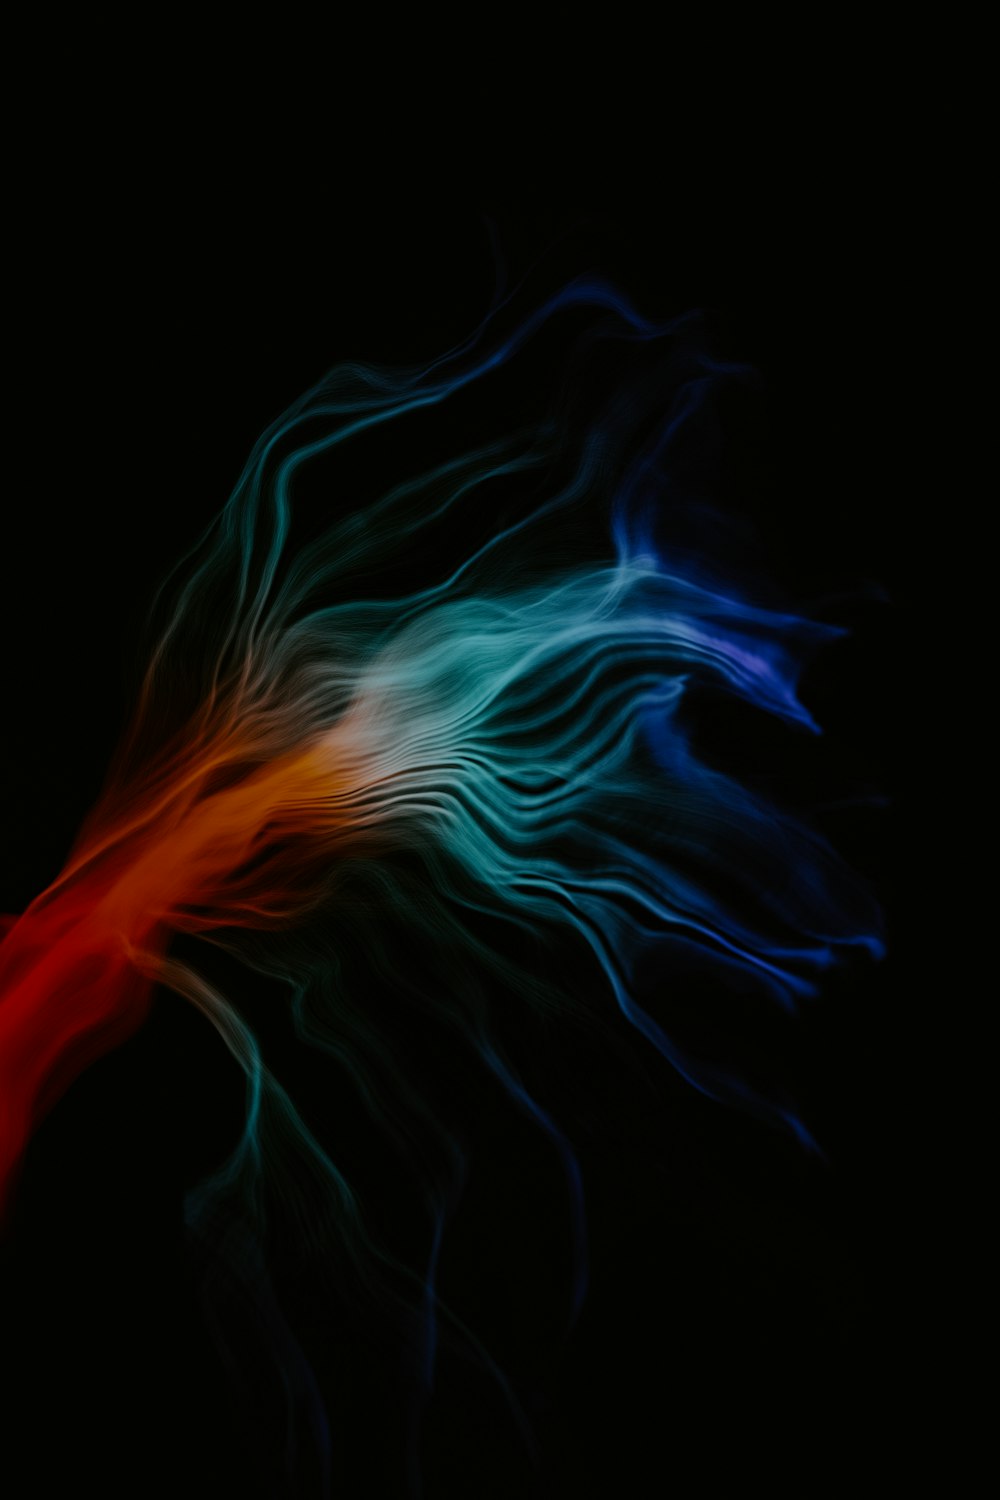 빨간색, 흰색 및 파란색 물체의 흐릿한 이미지